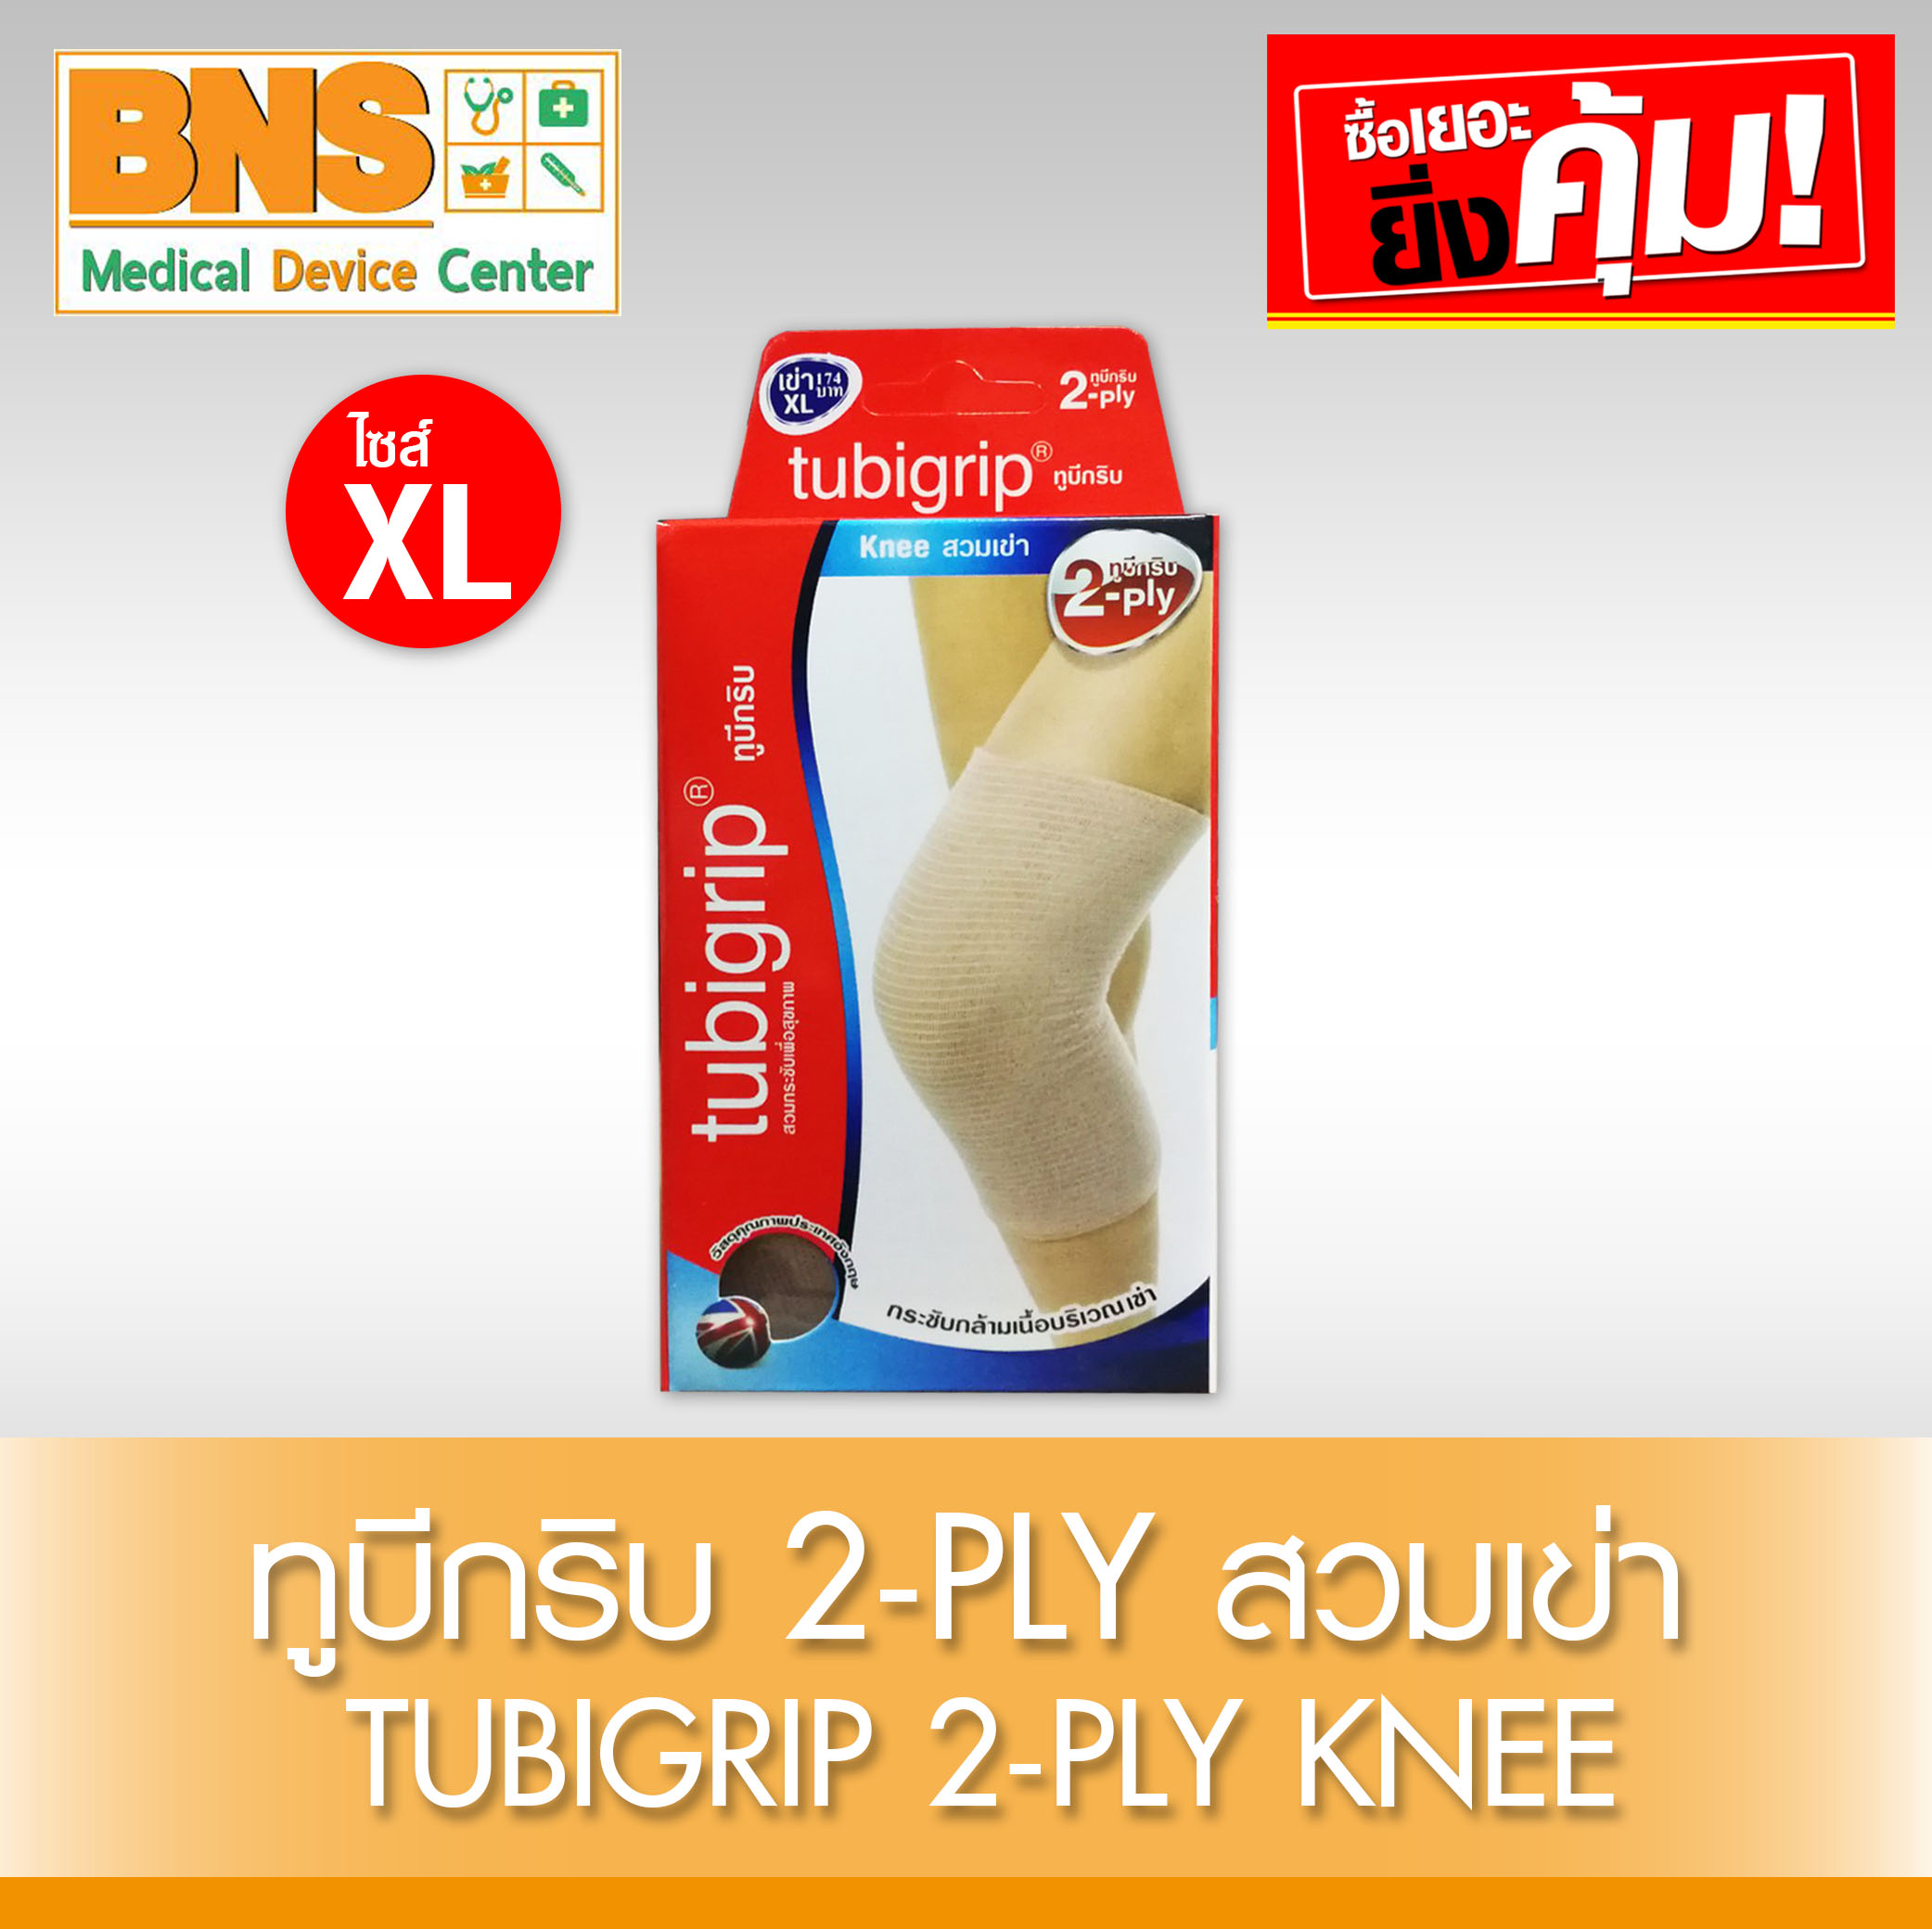 Tubigrip 2-Ply Knee สวมเข่า ไซร้ XL (สินค้าใหม่) (ถูกที่สุด) By BNS